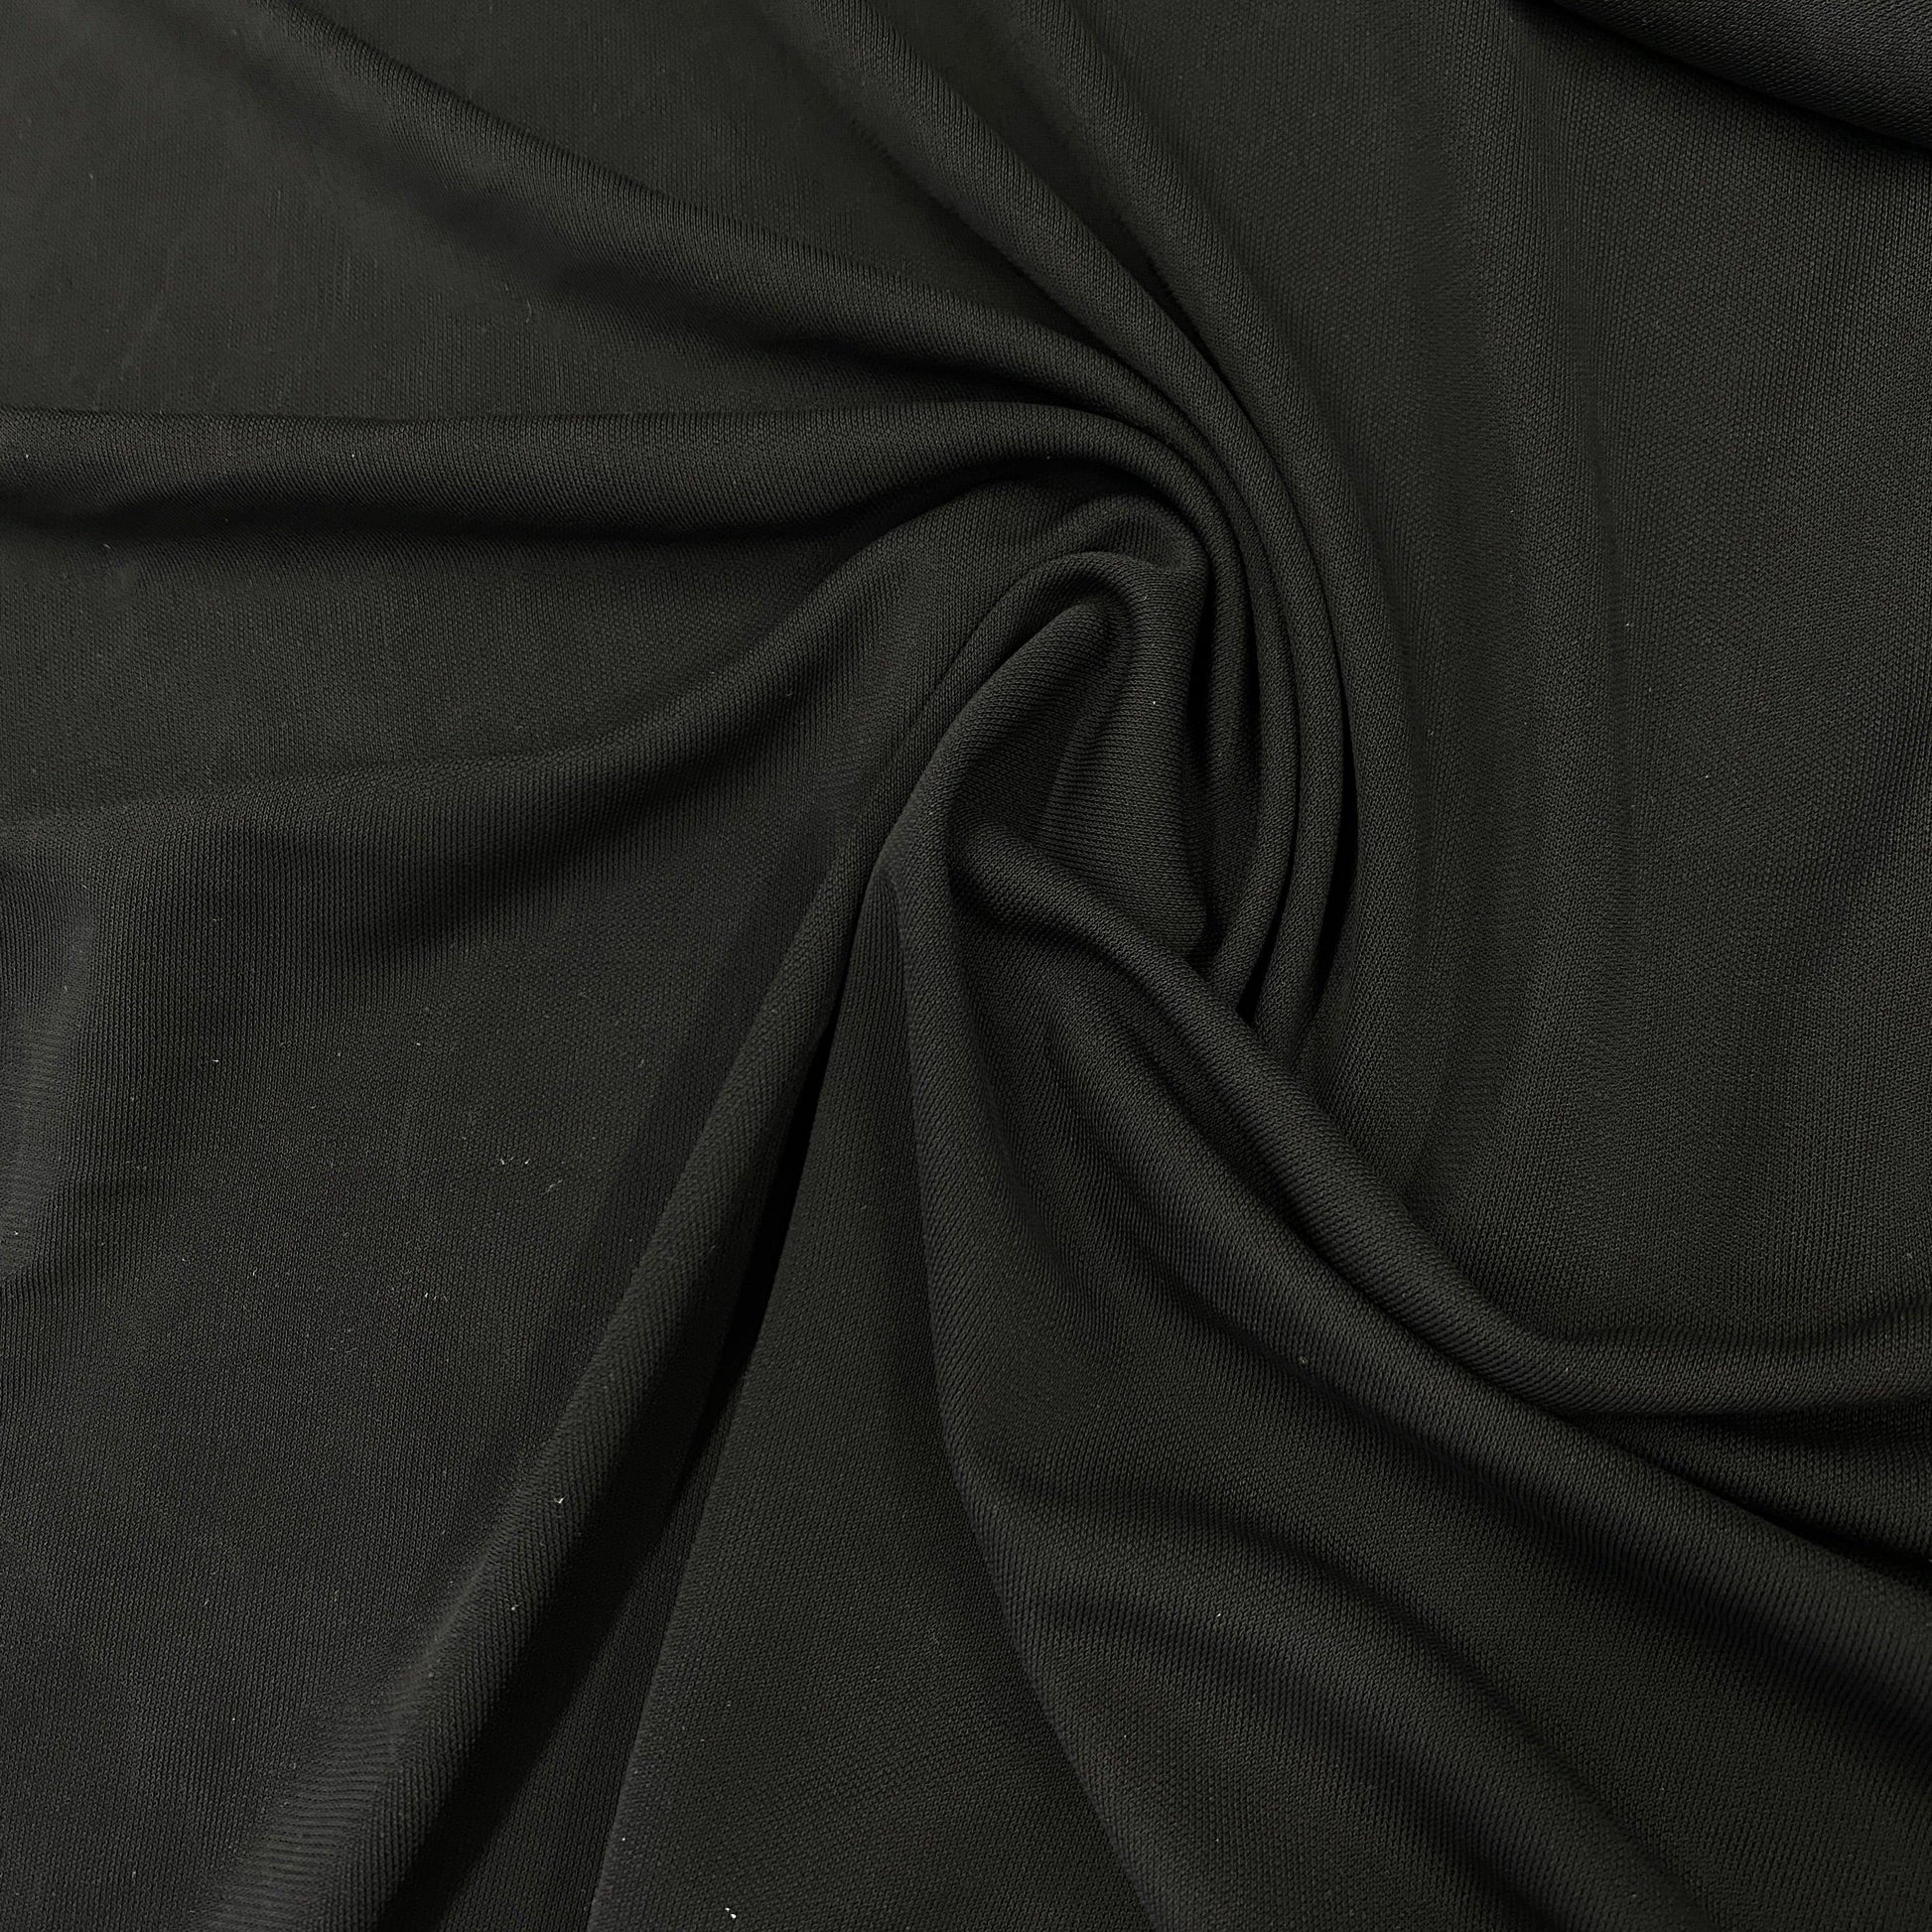 Black Rayon Jersey Fabric - Nature's Fabrics